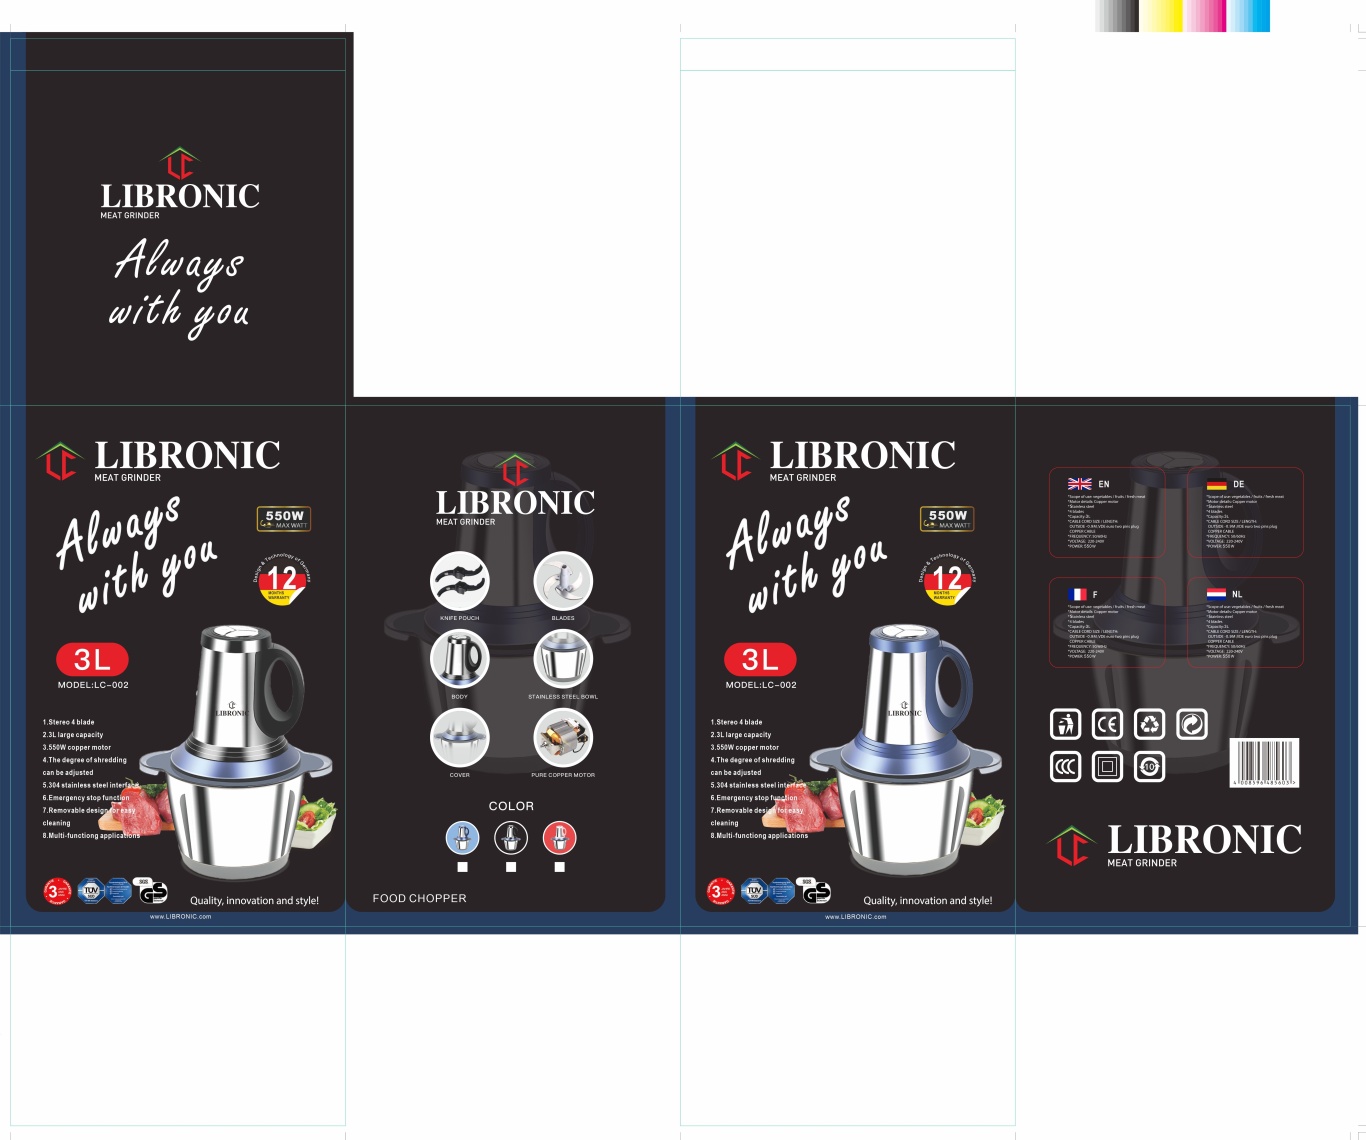 LIBRONIC品牌的绞肉机料理器黑色包装图1